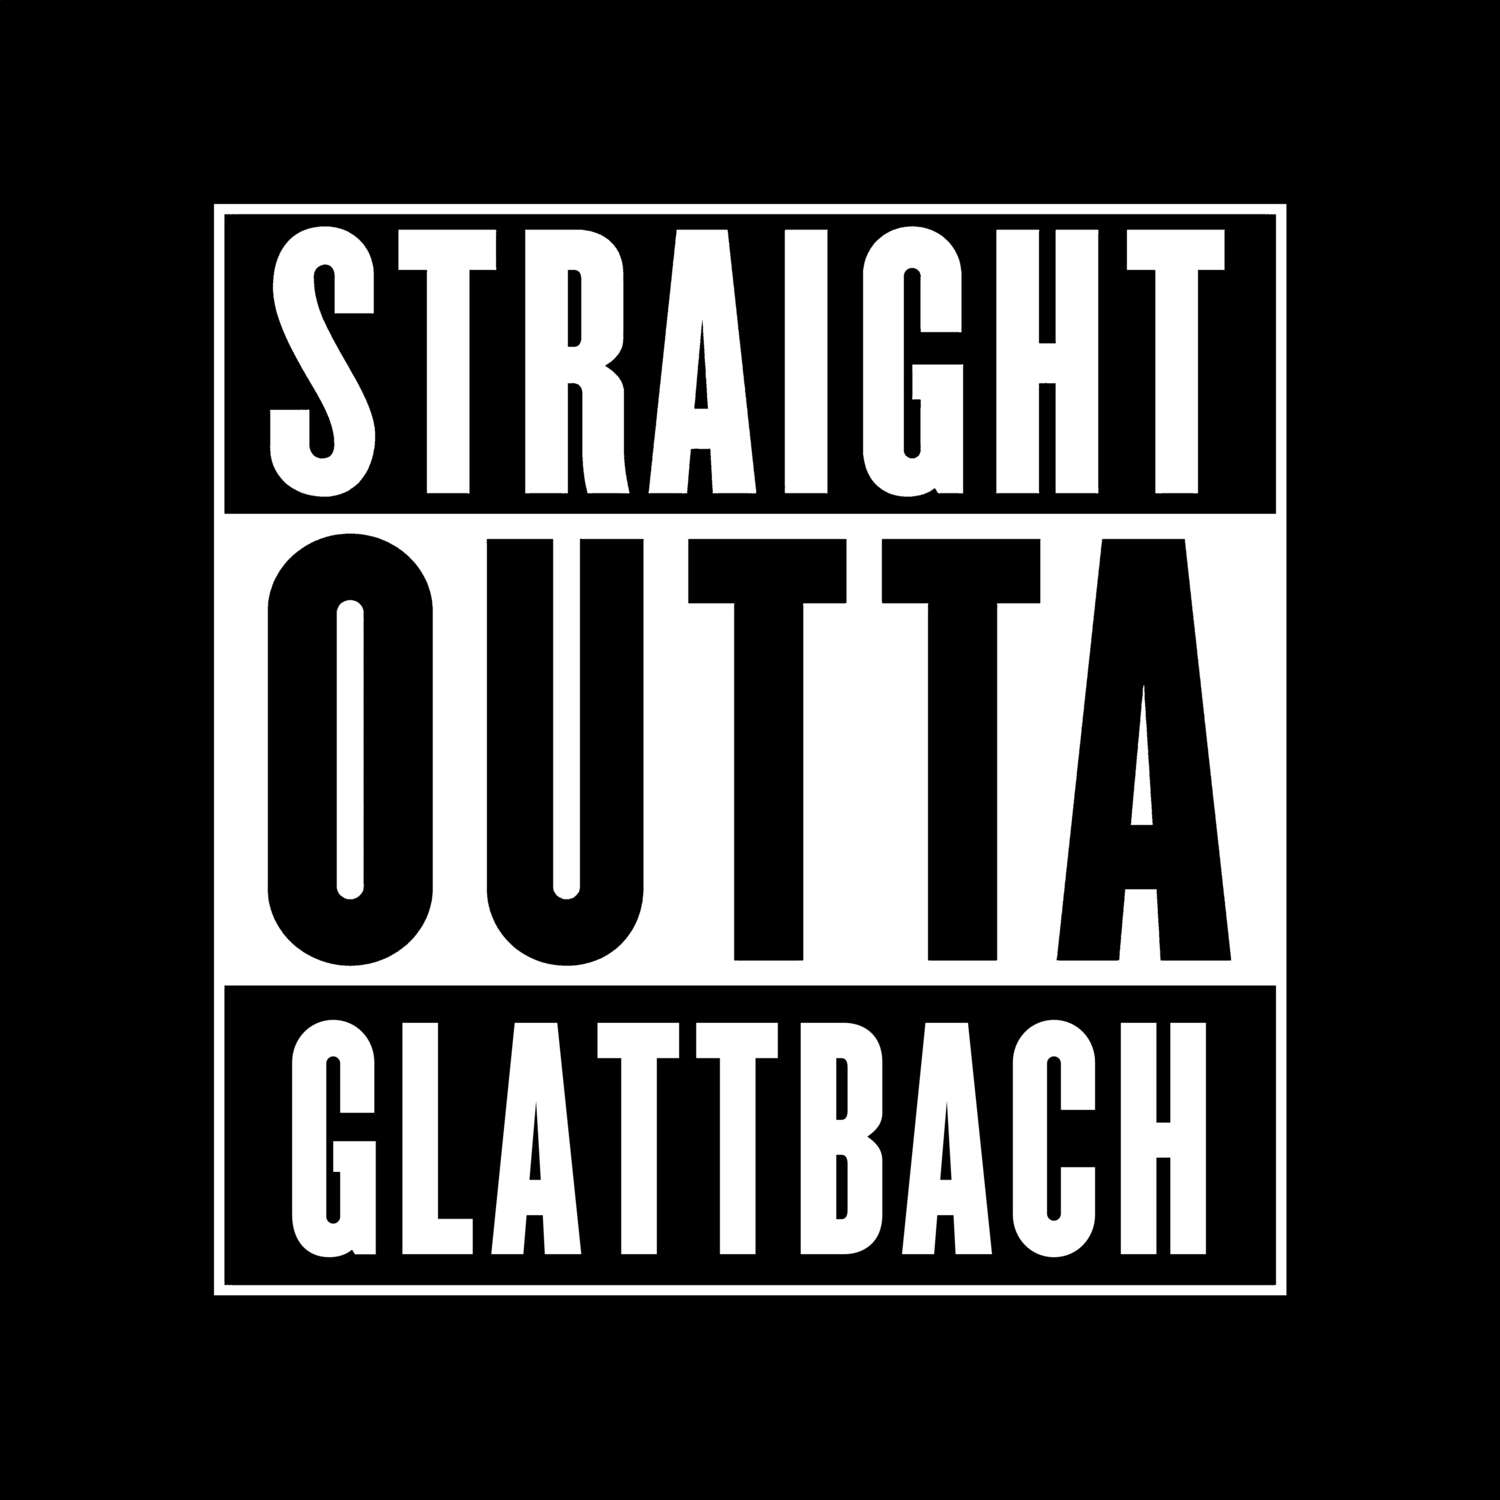 Glattbach T-Shirt »Straight Outta«